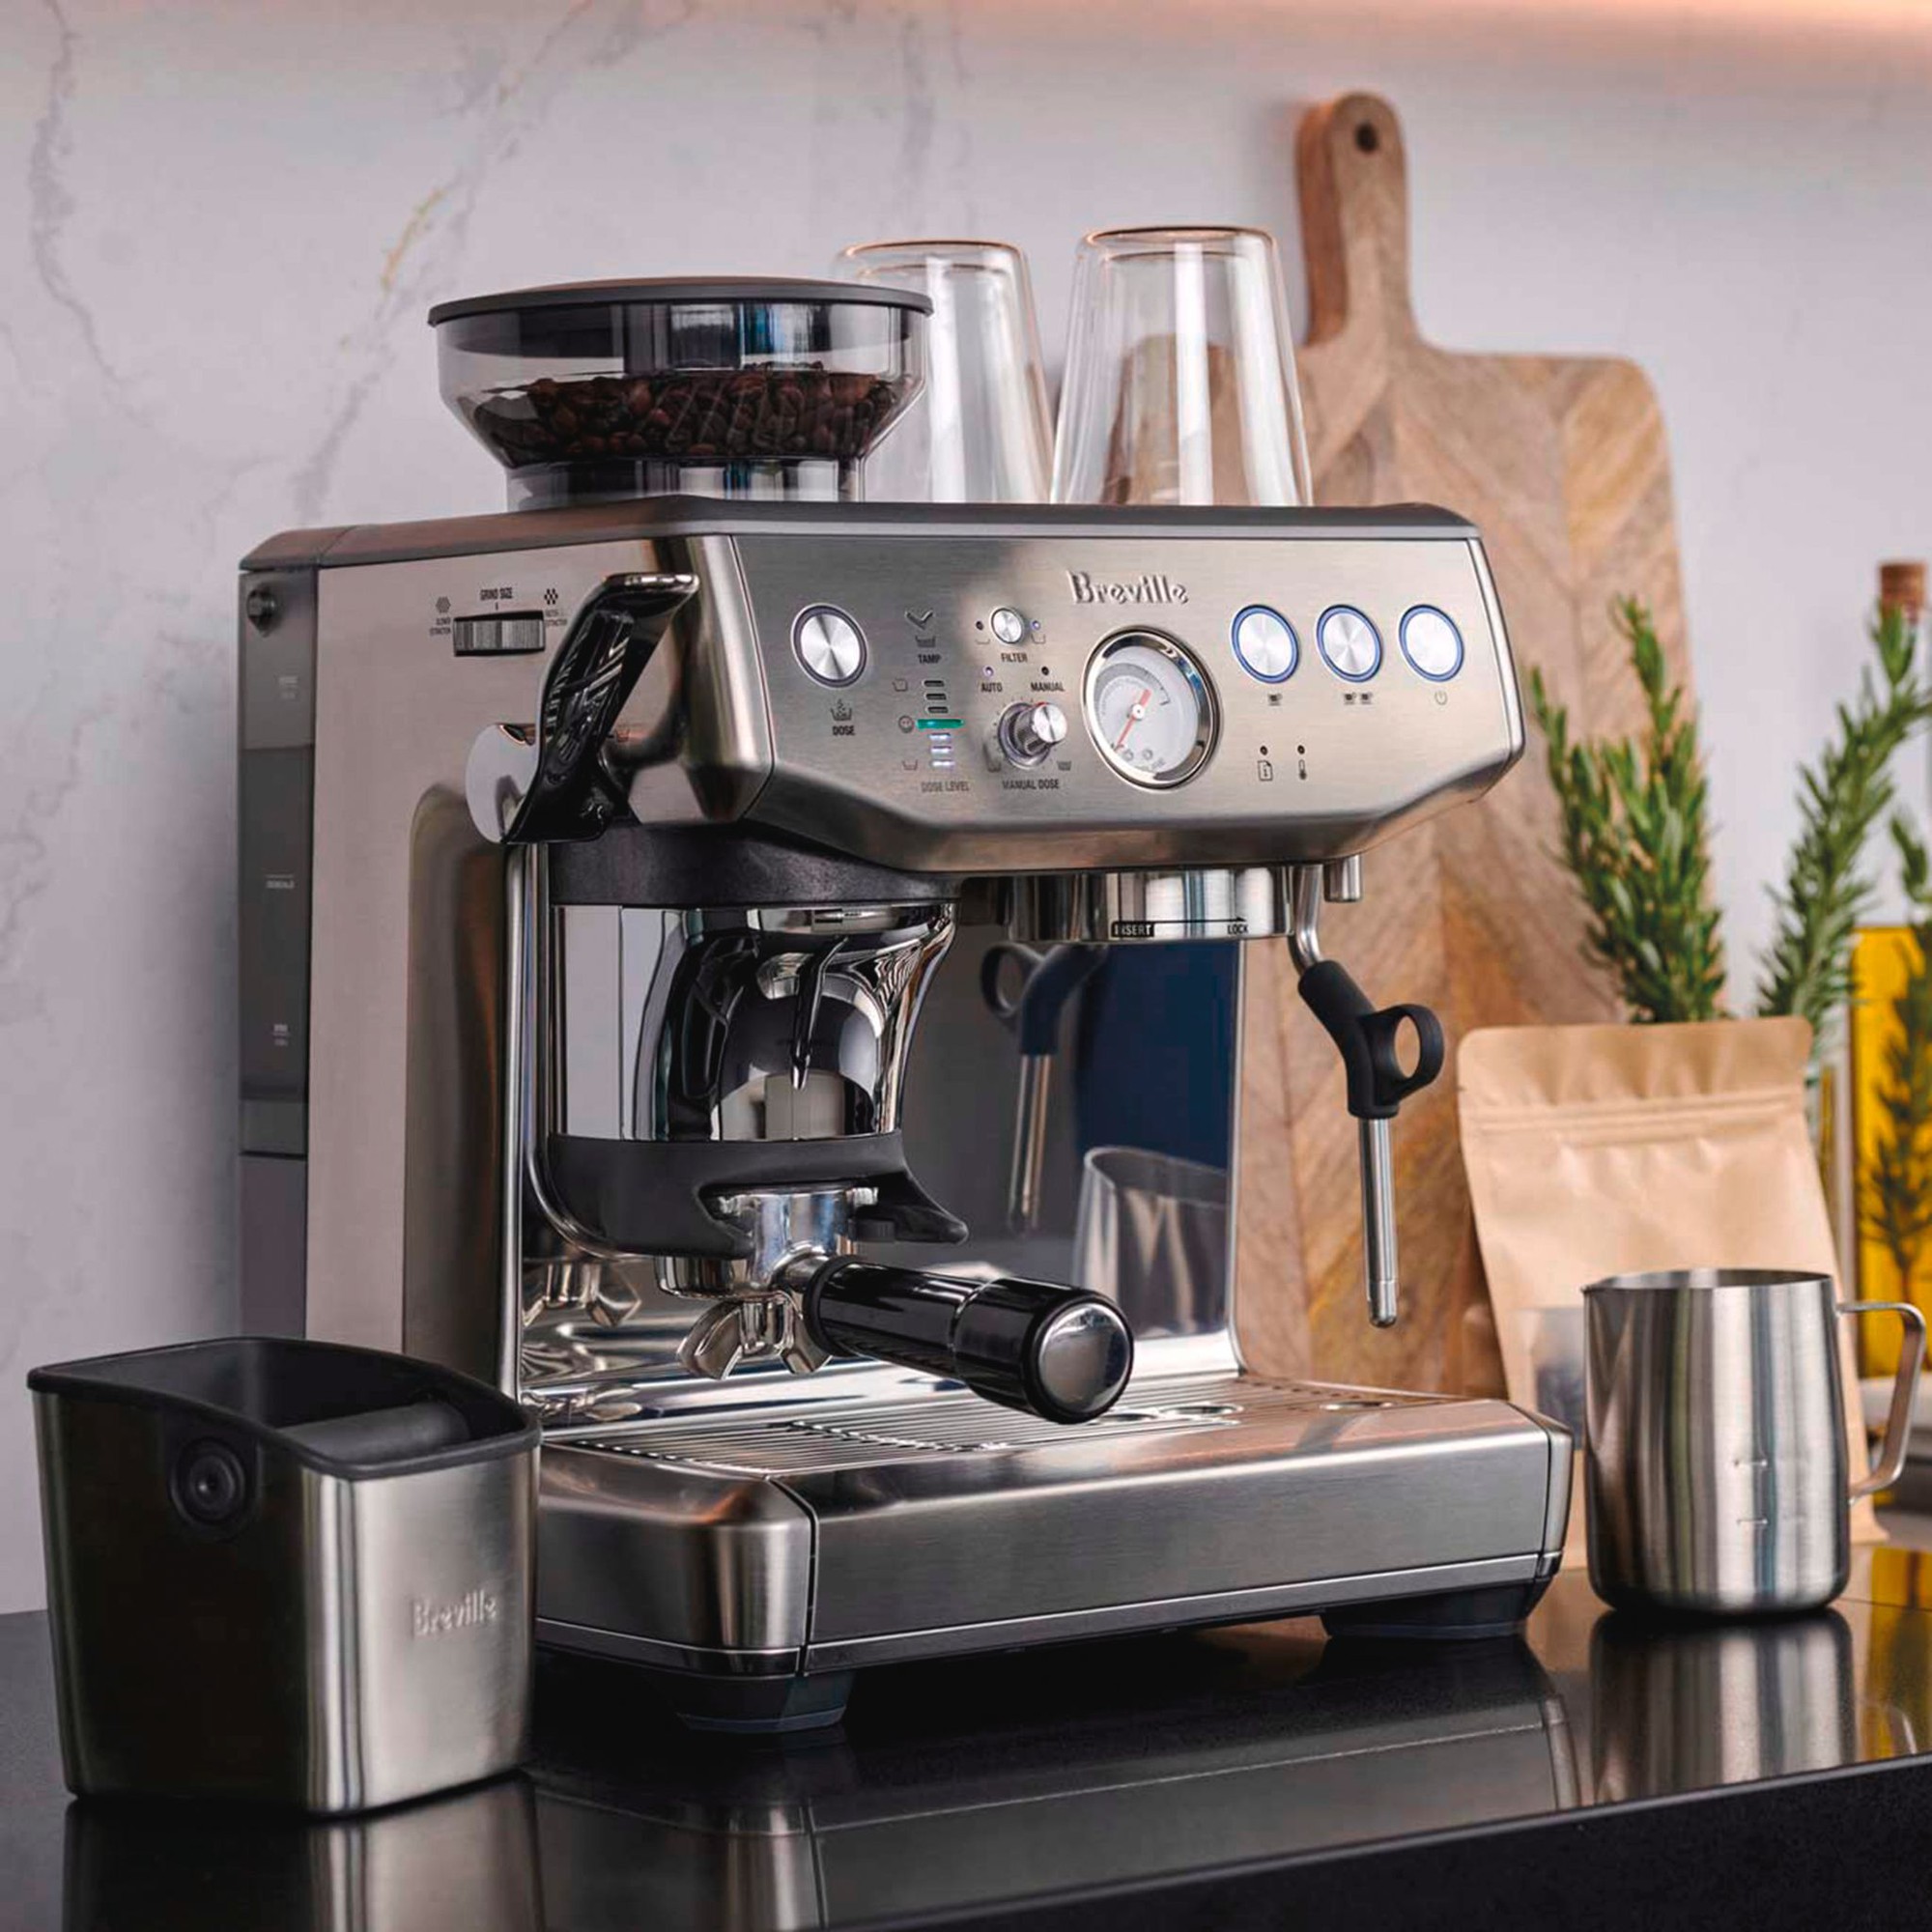 Thưởng thức cafe chất lượng cao một cách đơn giản và sạch hơn tại nhà từ máy pha cà phê Breville - Ảnh 2.